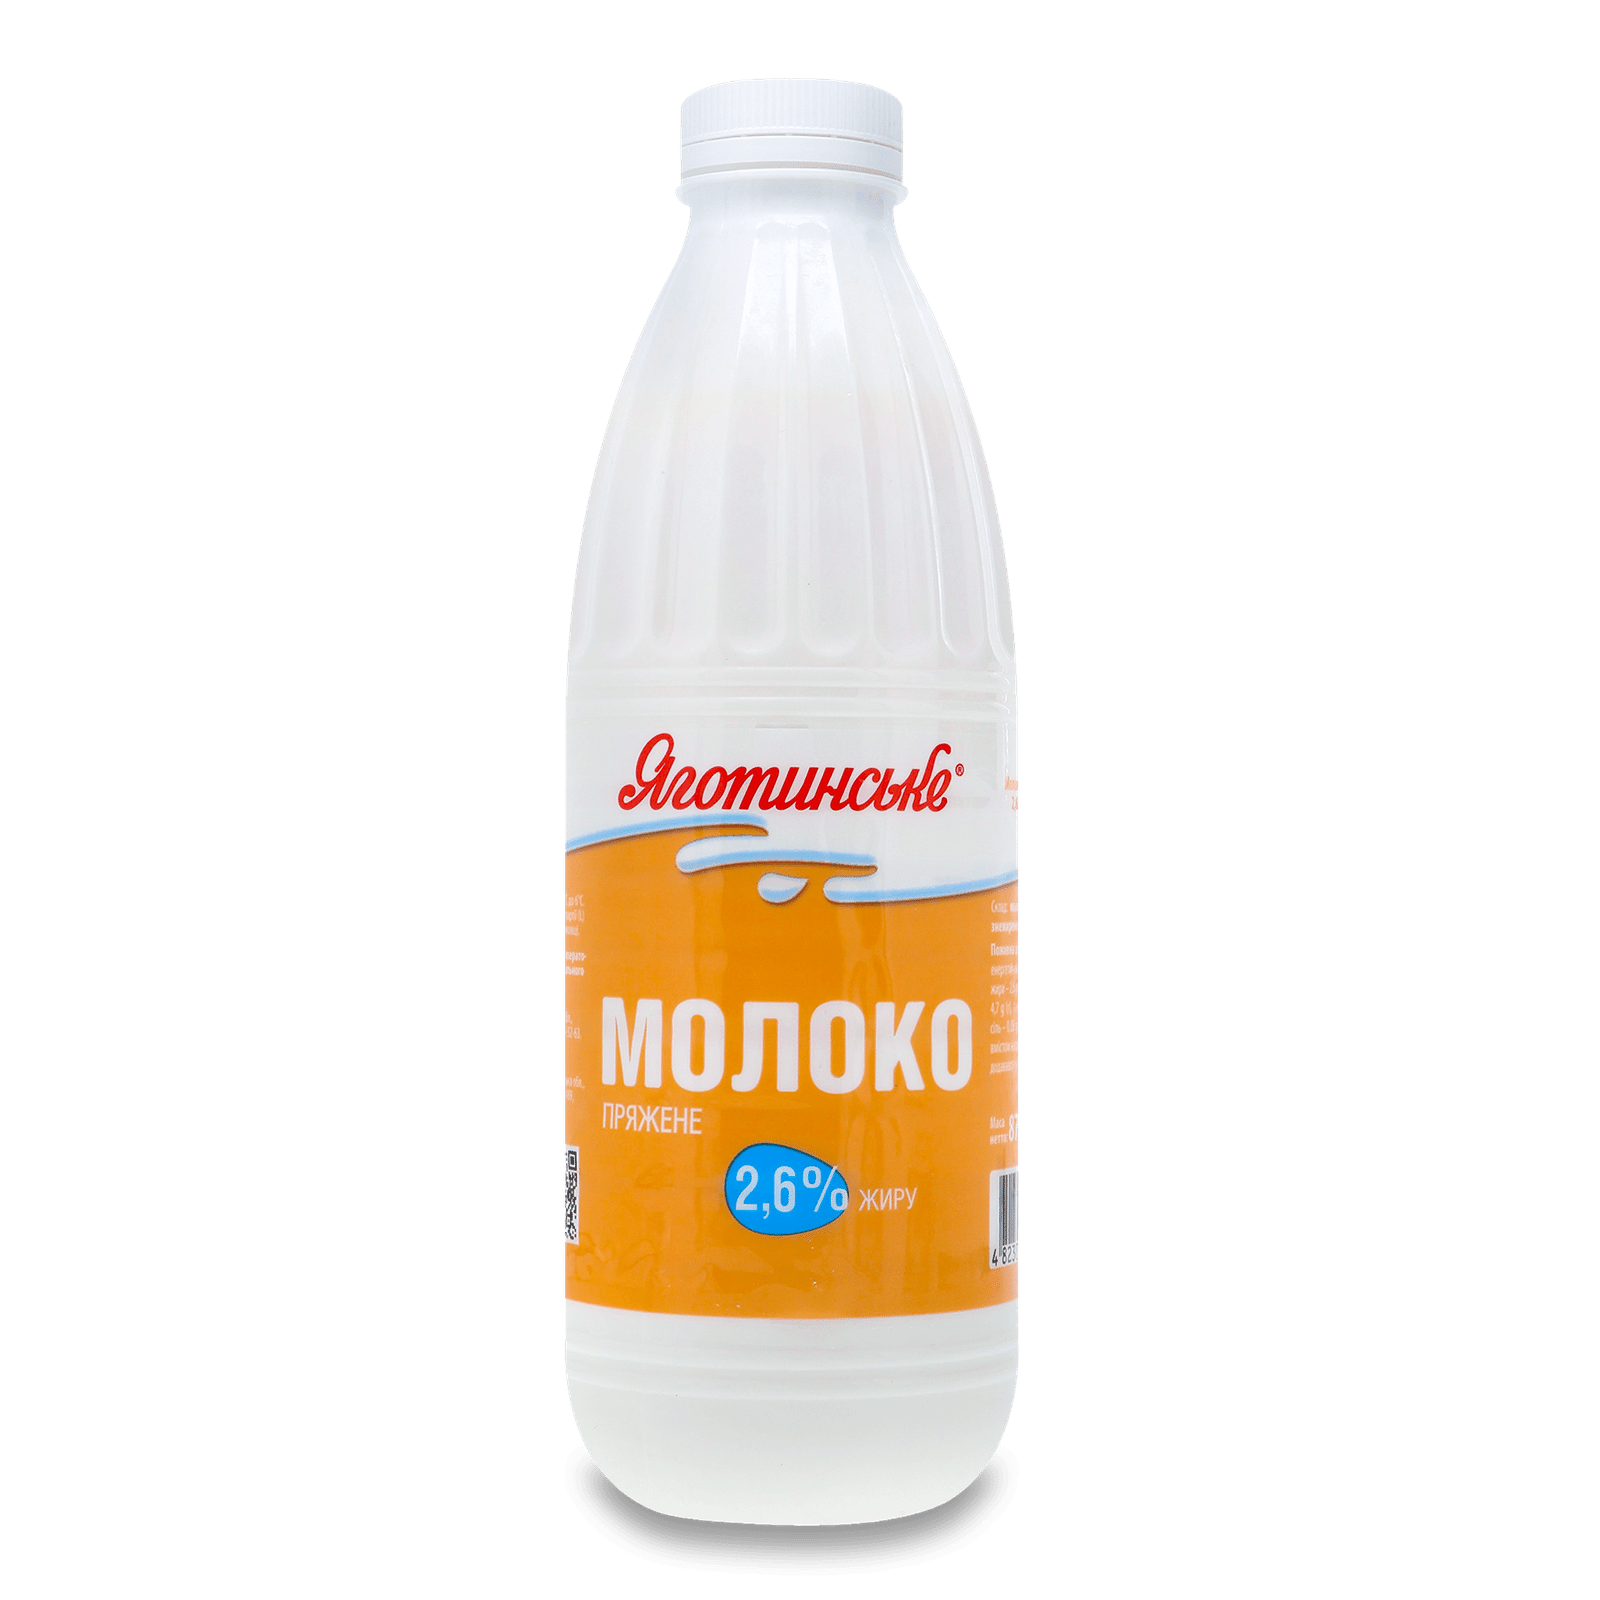 Молоко «Яготинське» пряжене 2,6% - 1